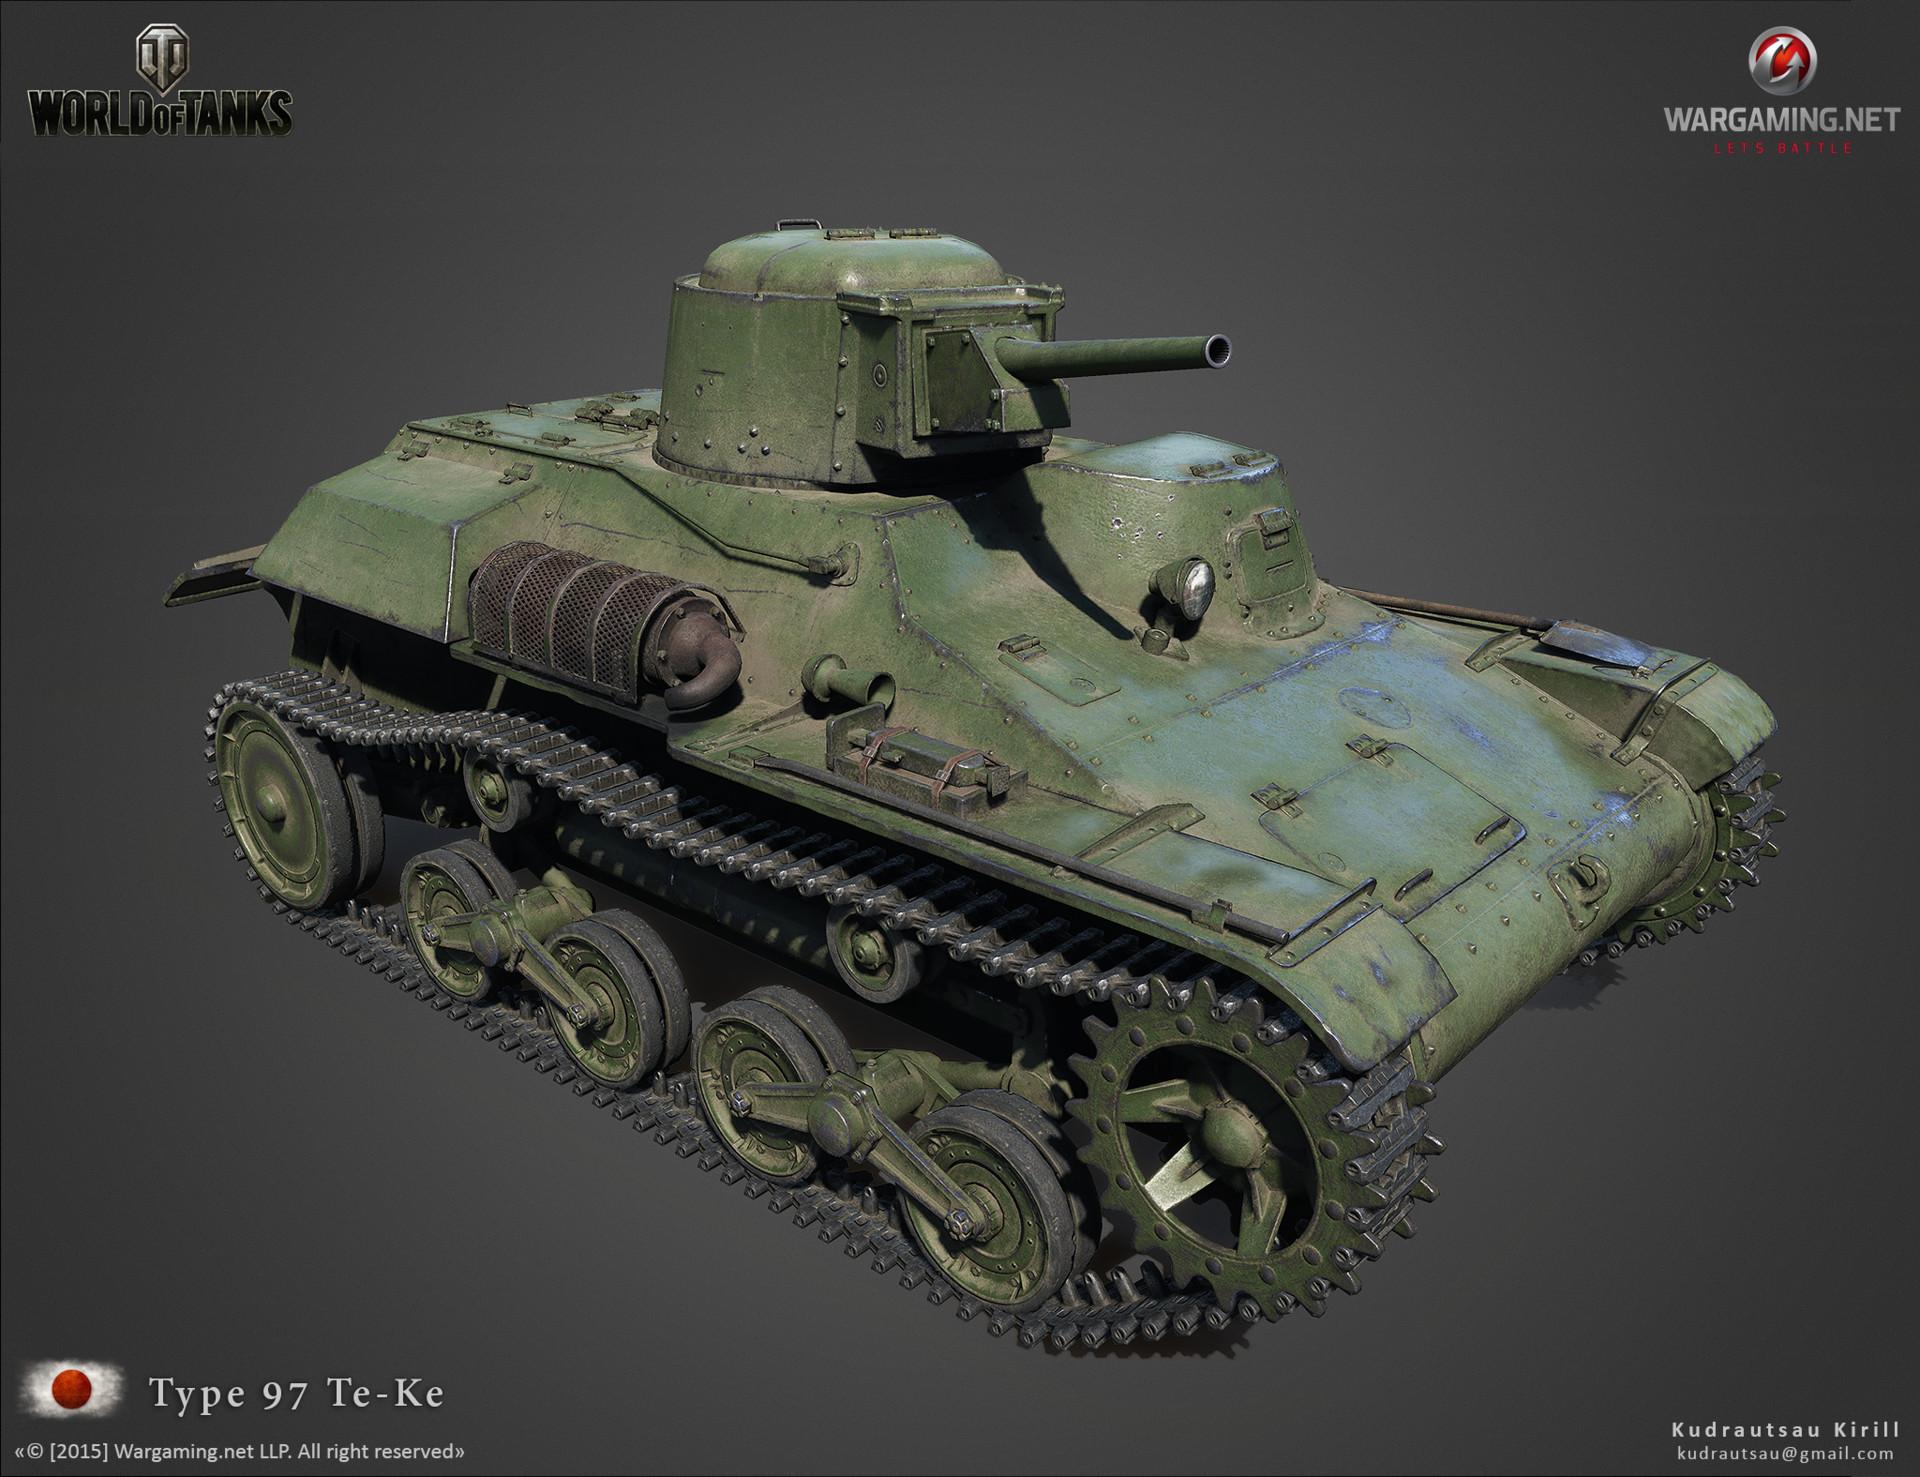 二战德军《坦克装甲车辆》博物馆精选图片(二) - bill 的博客